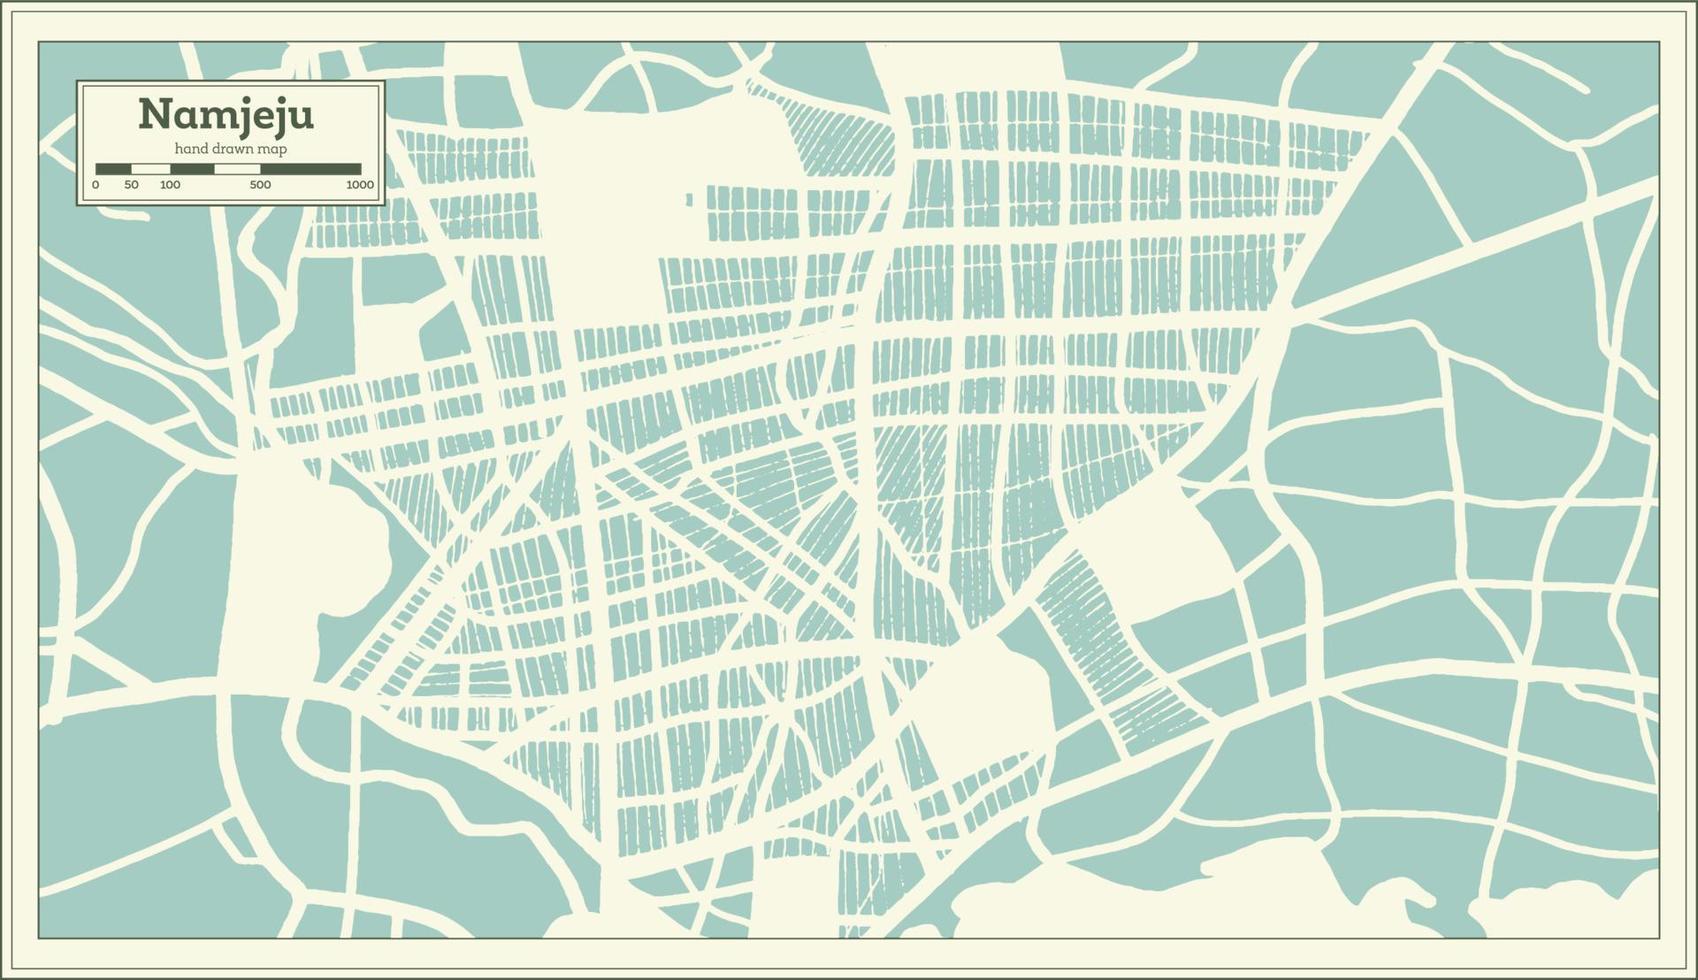 plan de la ville de namjeju en corée du sud dans un style rétro. carte muette. vecteur